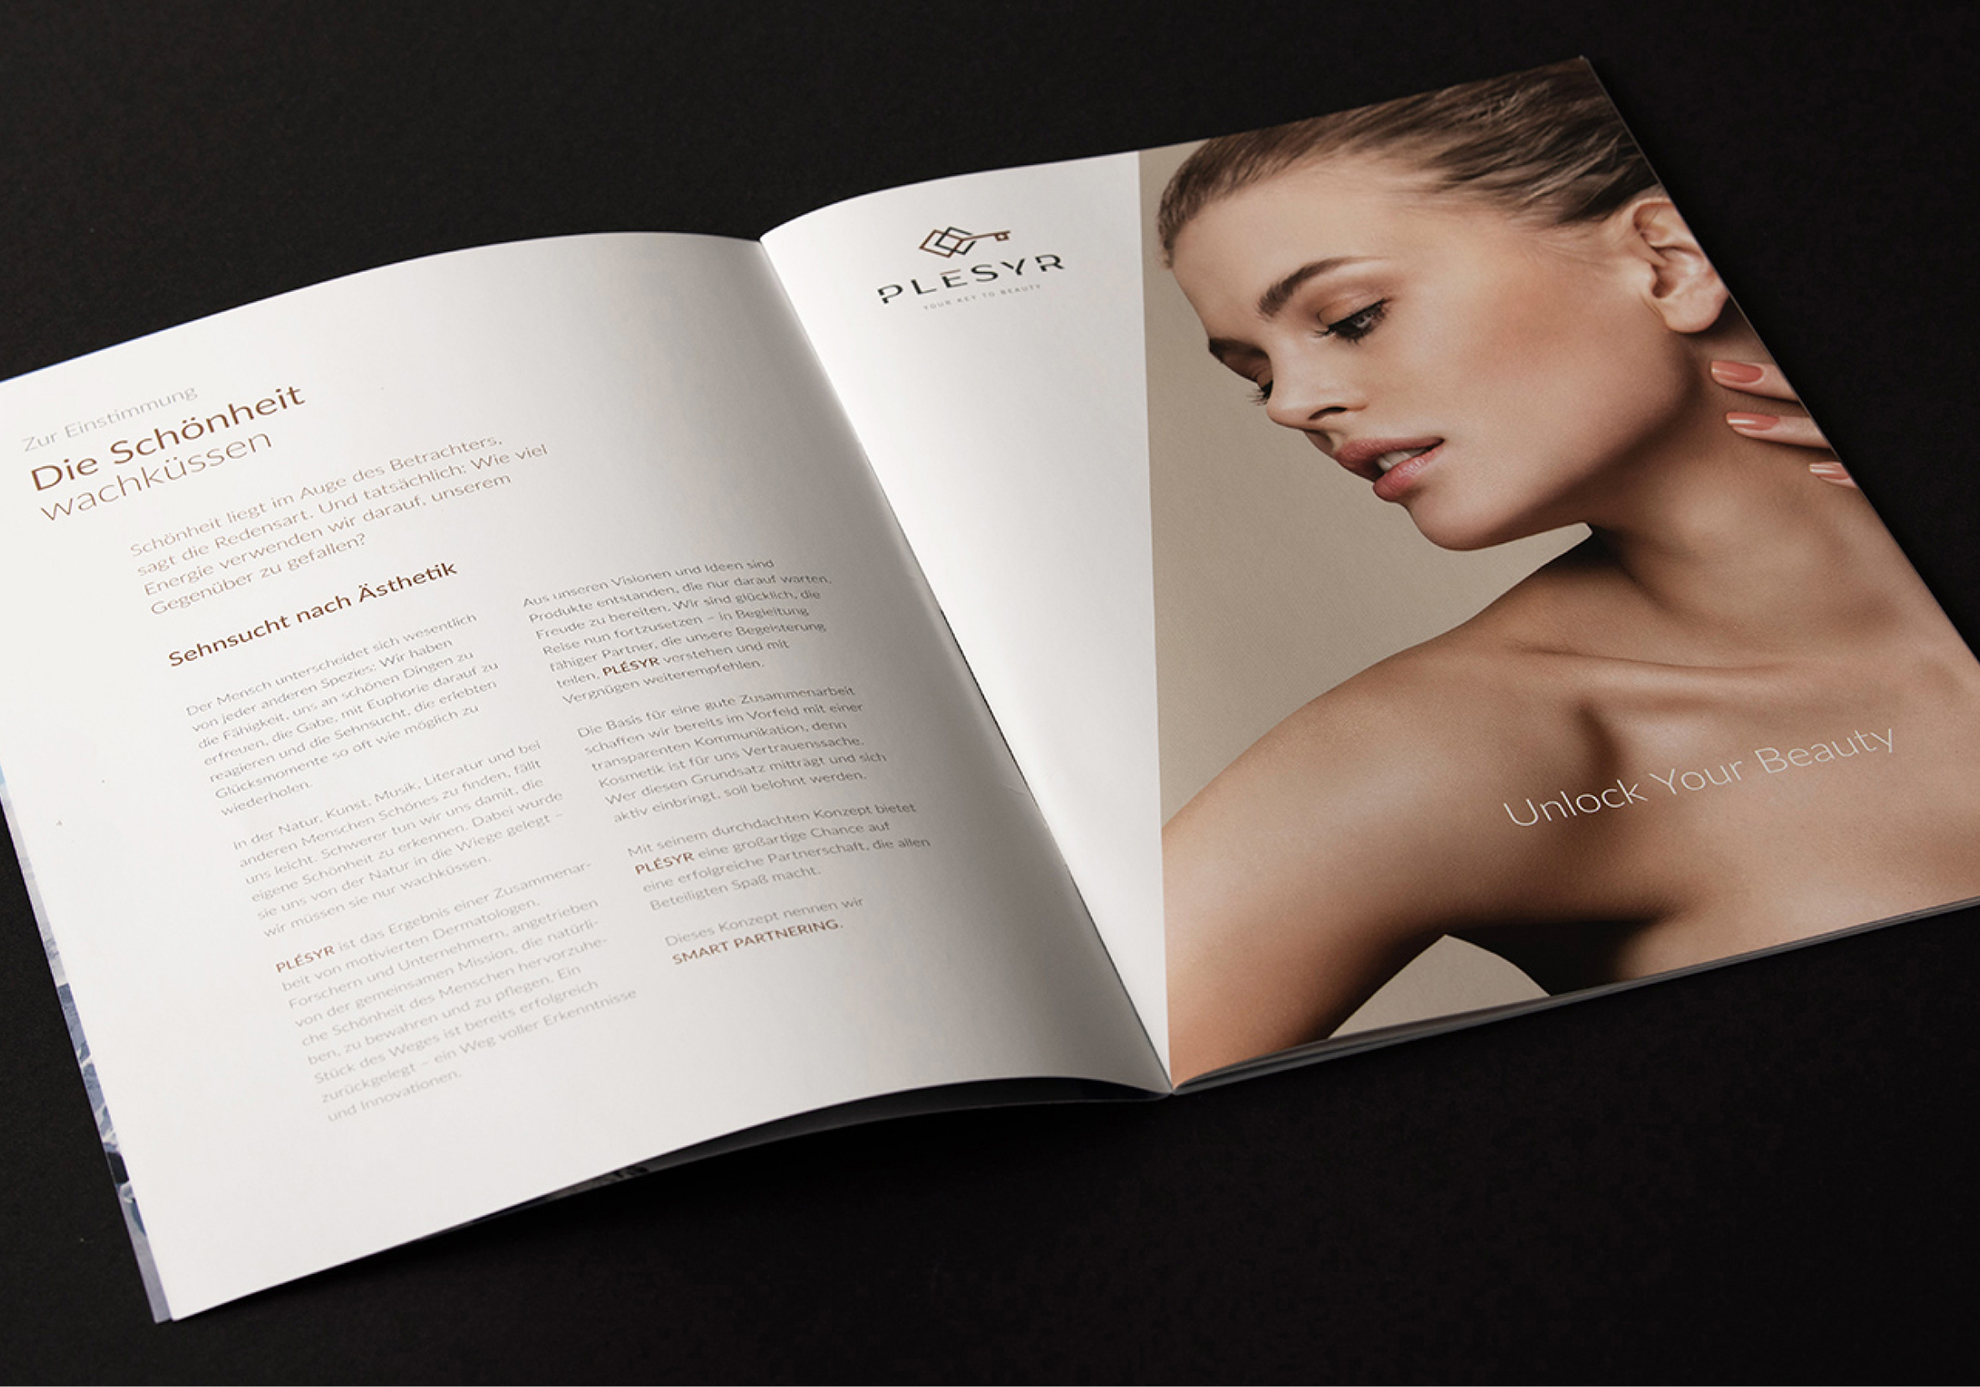 Broschüren Design für Plésyr Cosmetics